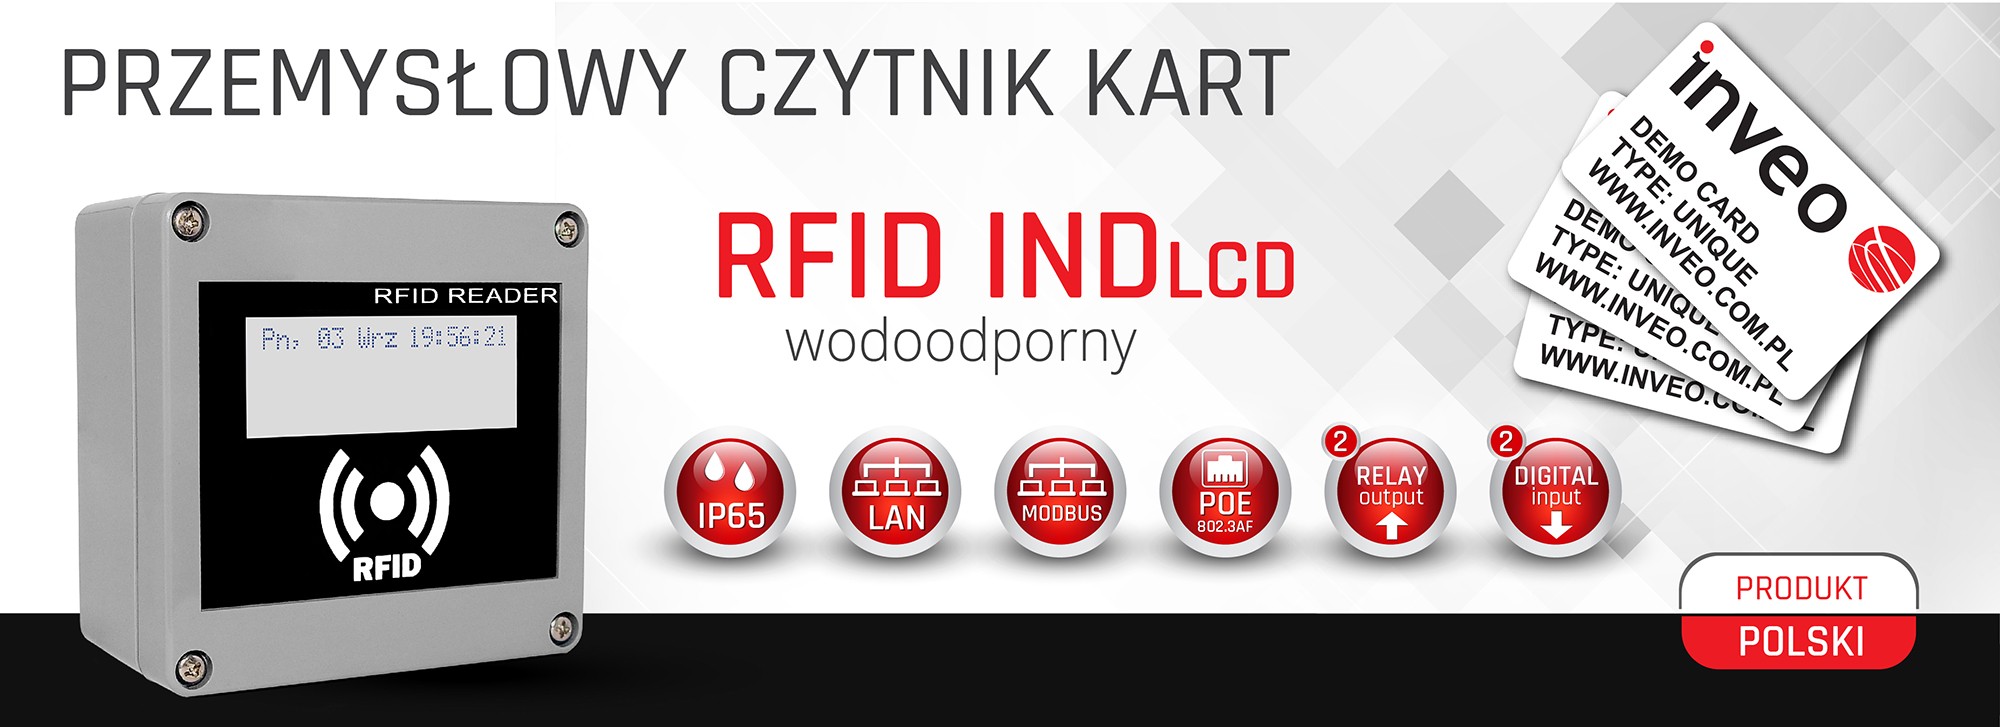 RFID IND